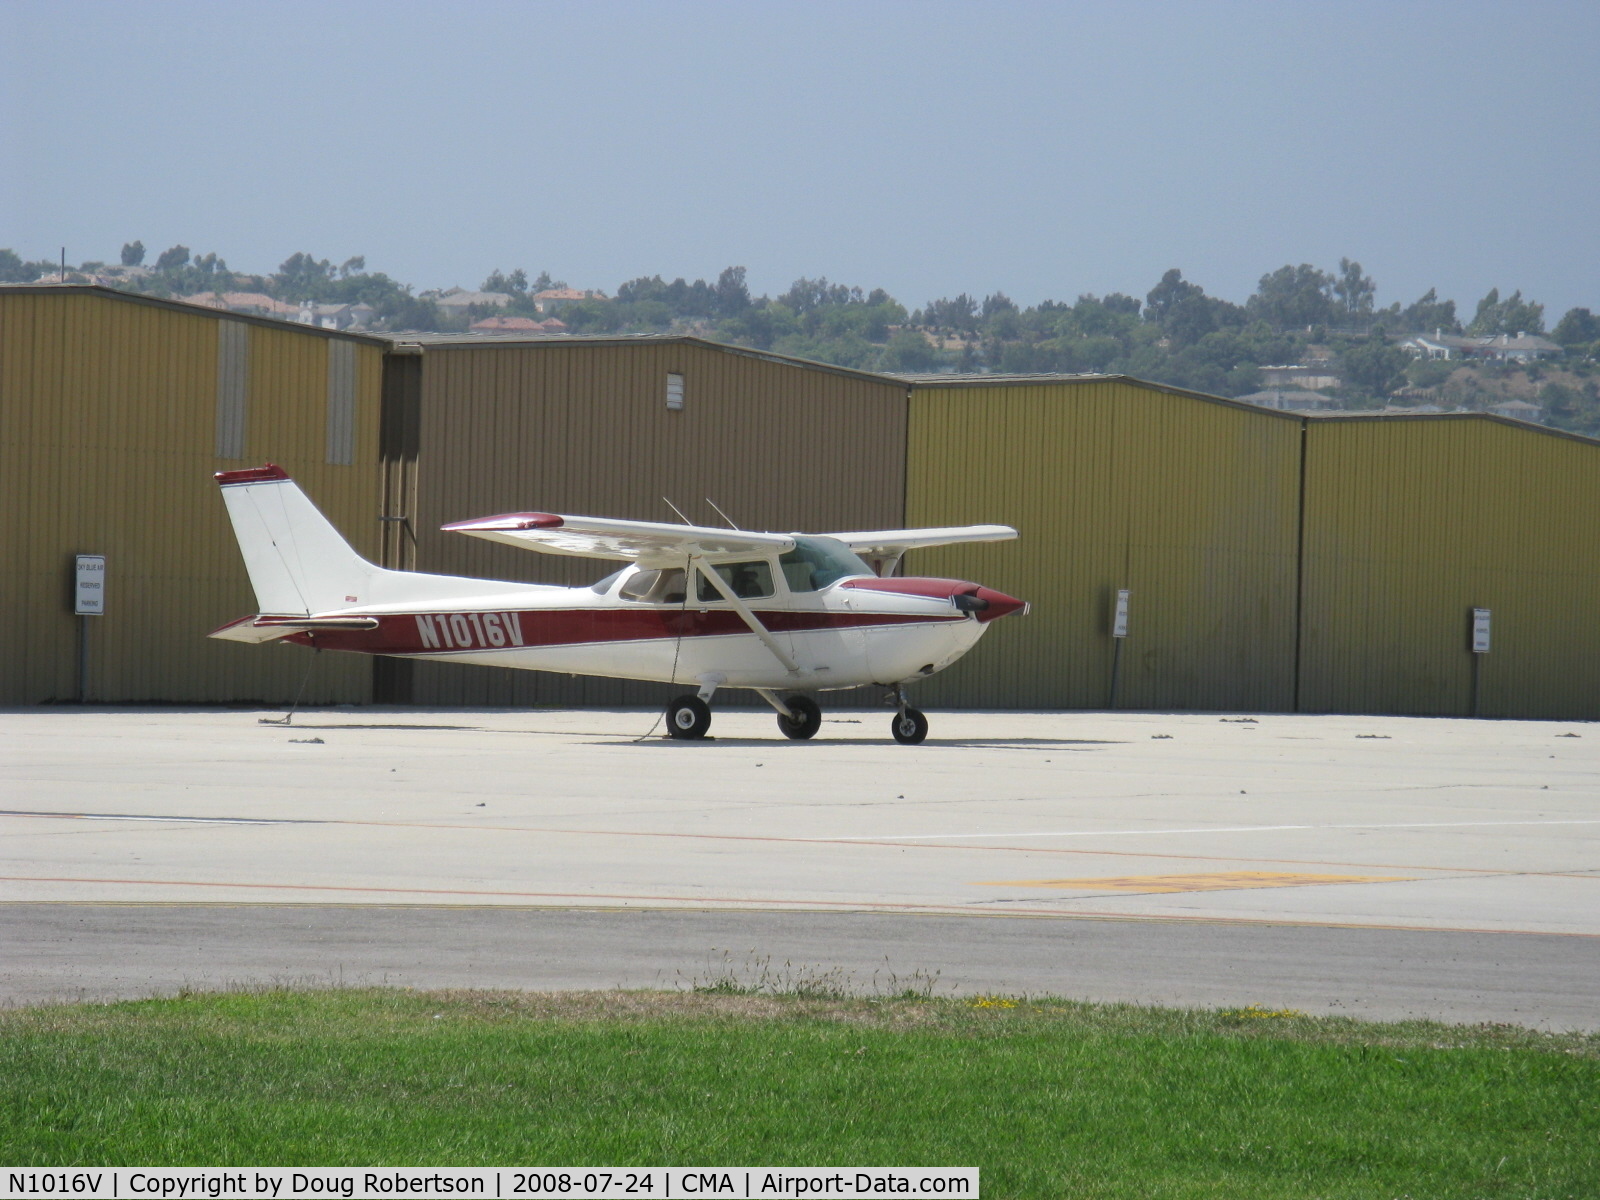 N1016V, 1976 Cessna R172K Hawk XP C/N R1722082, 1976 Cessna R172K Continental IO-360-D 210 Hp, CS prop